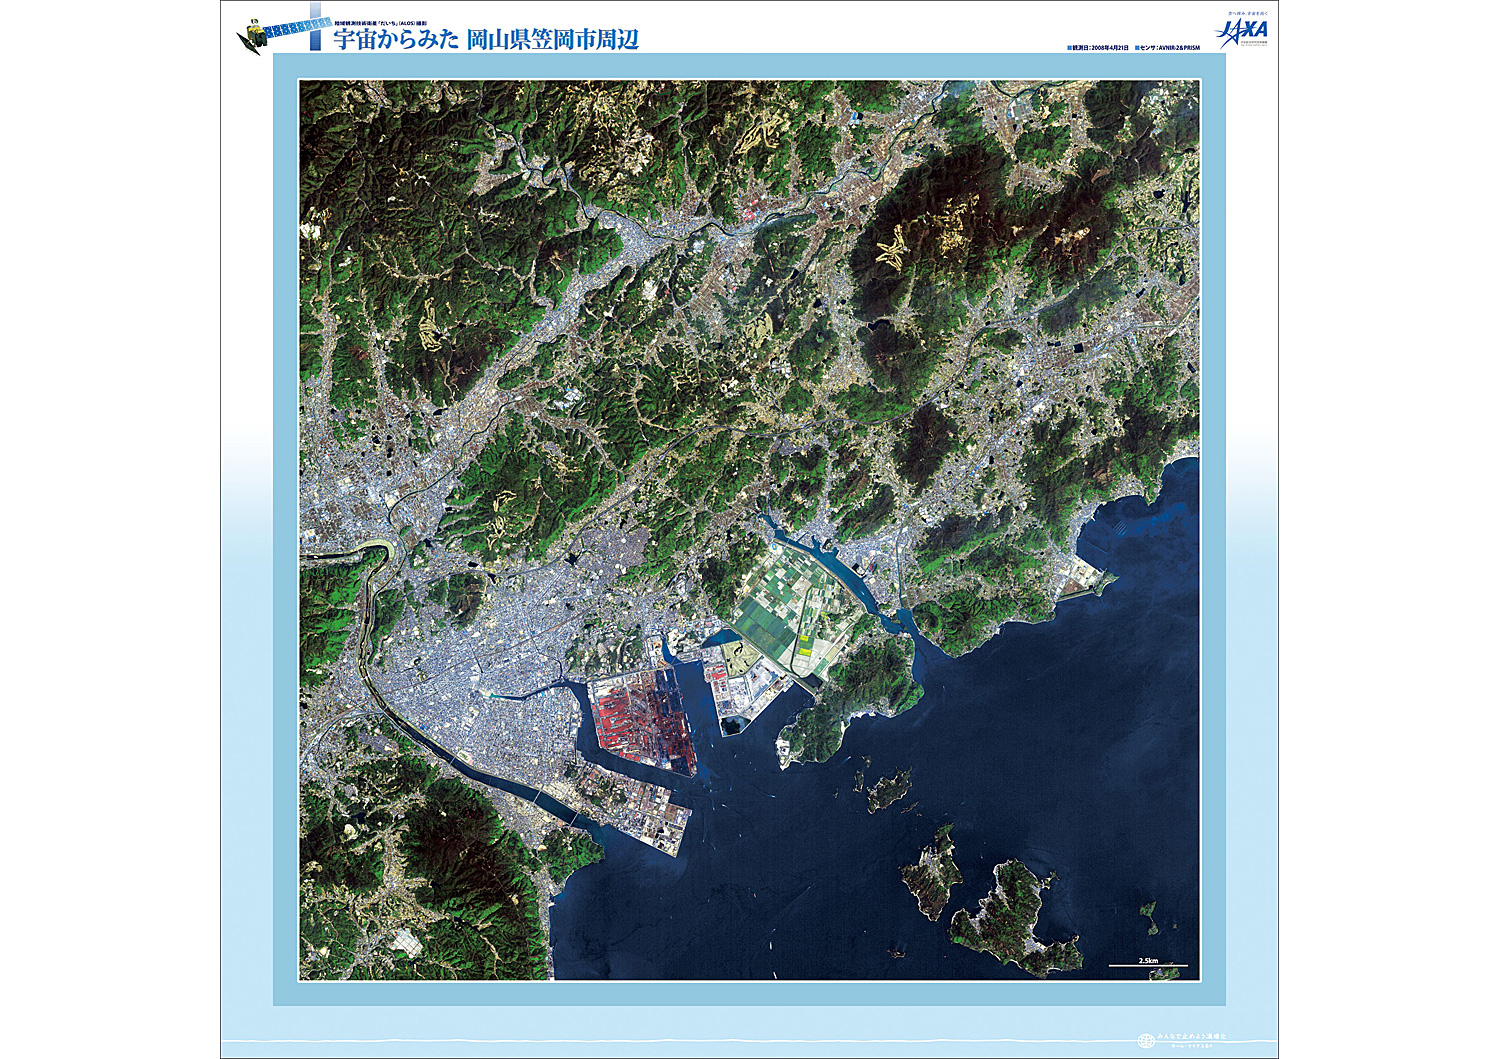 だいちから見た日本の都市 笠岡市:衛星画像（ポスター仕上げ）